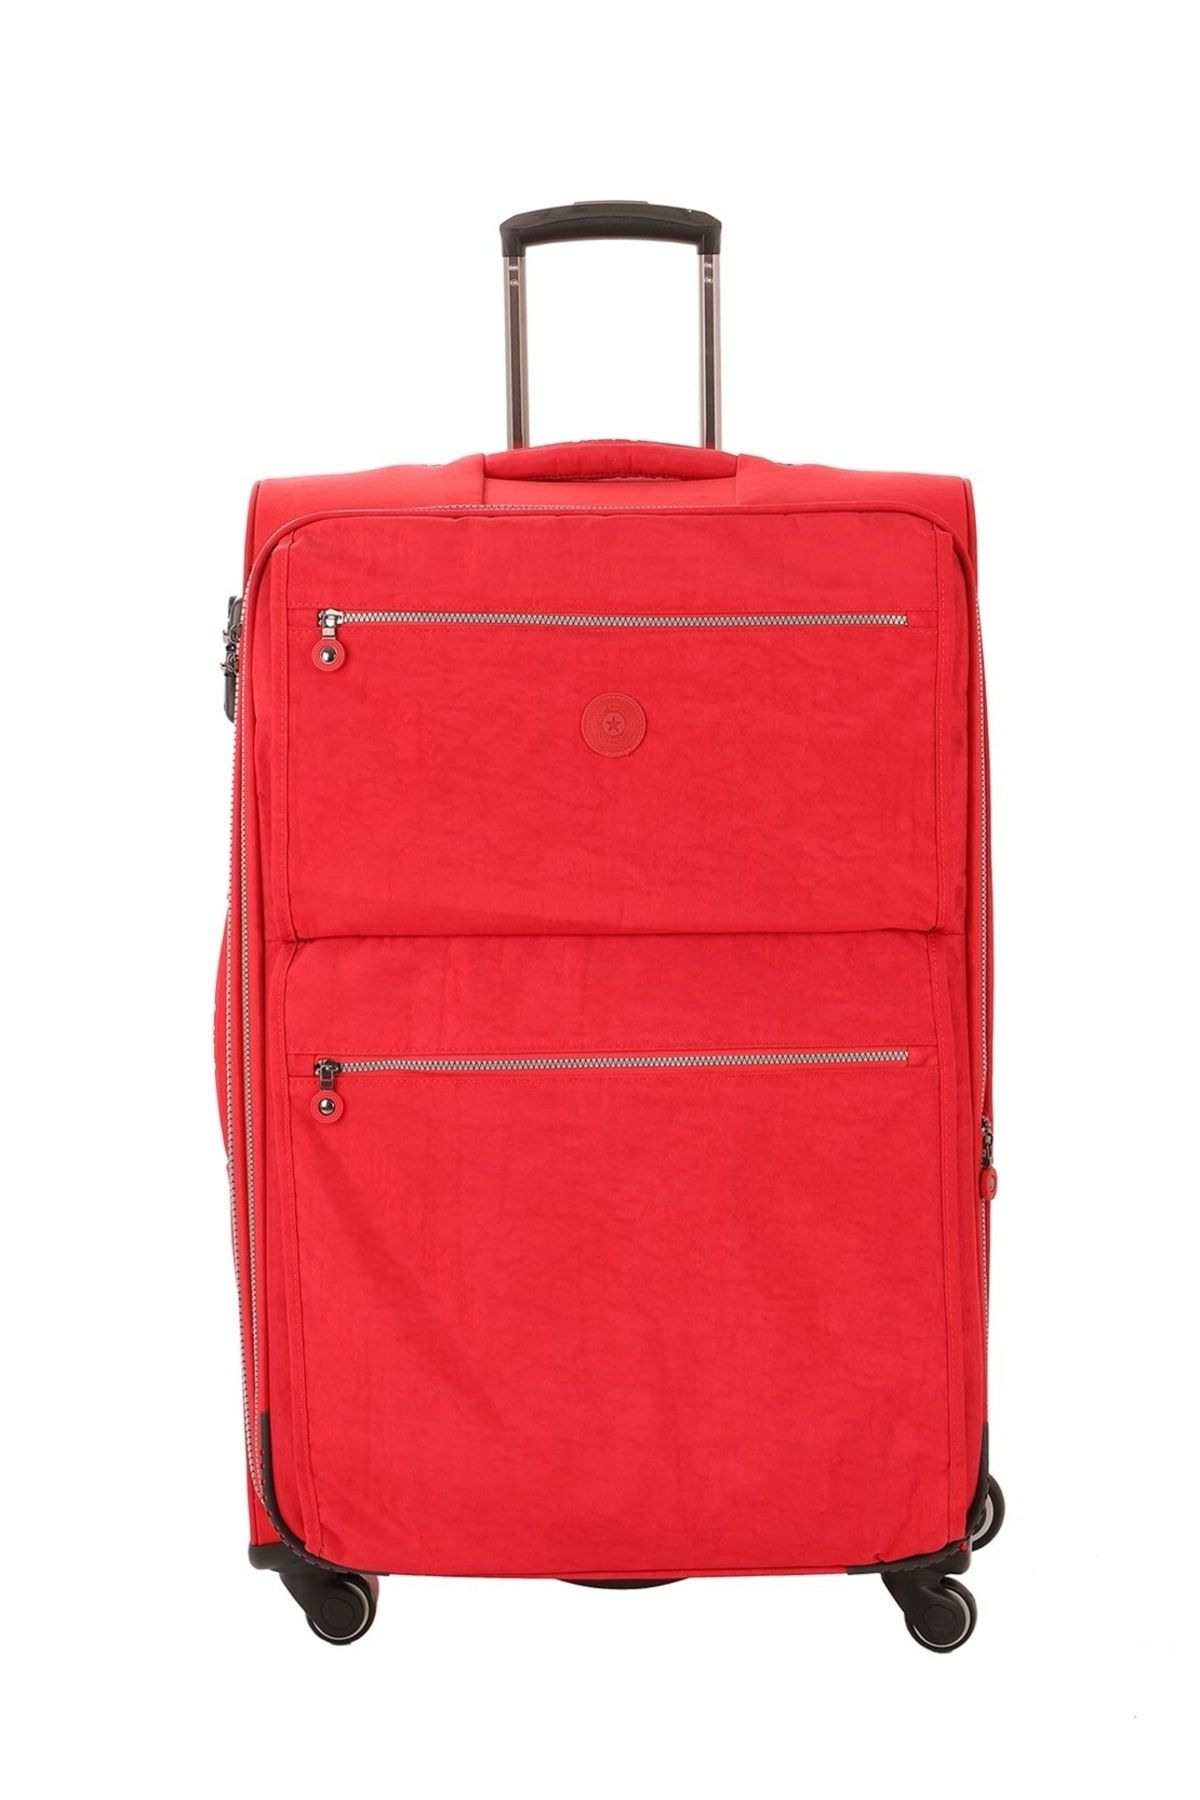 MÇS V111-1 Kırmızı Krinkle Kumaş Büyük Boy Valiz, Bavul